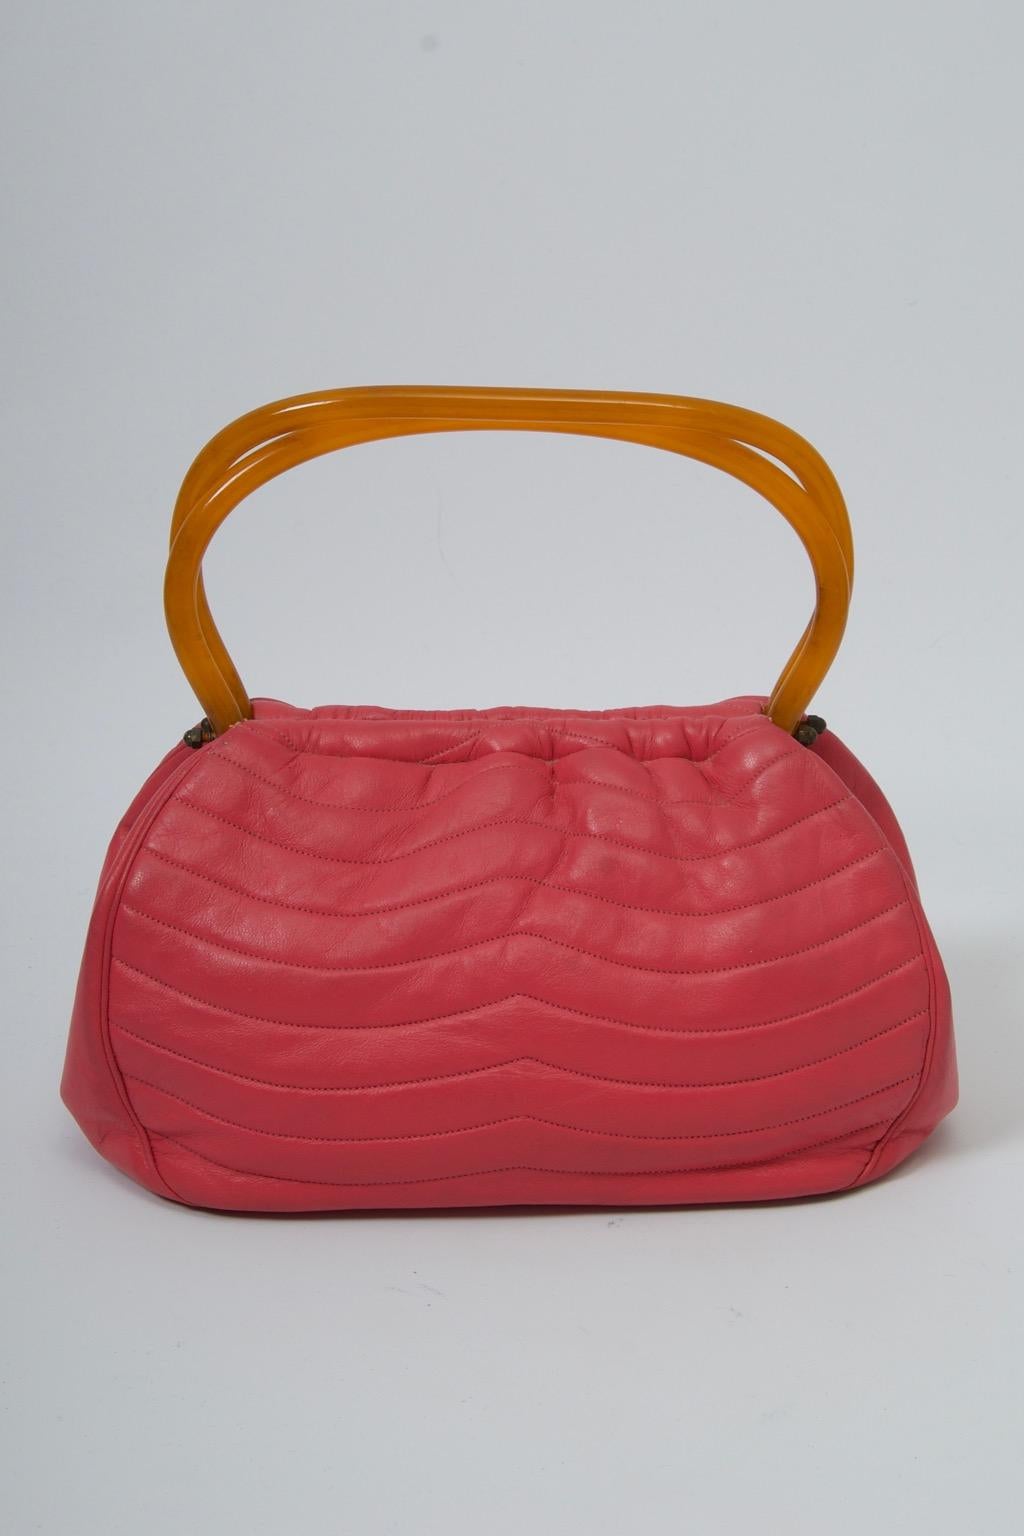 Morris Moskowitz Rose Pink 1960s Bag For Sale 4